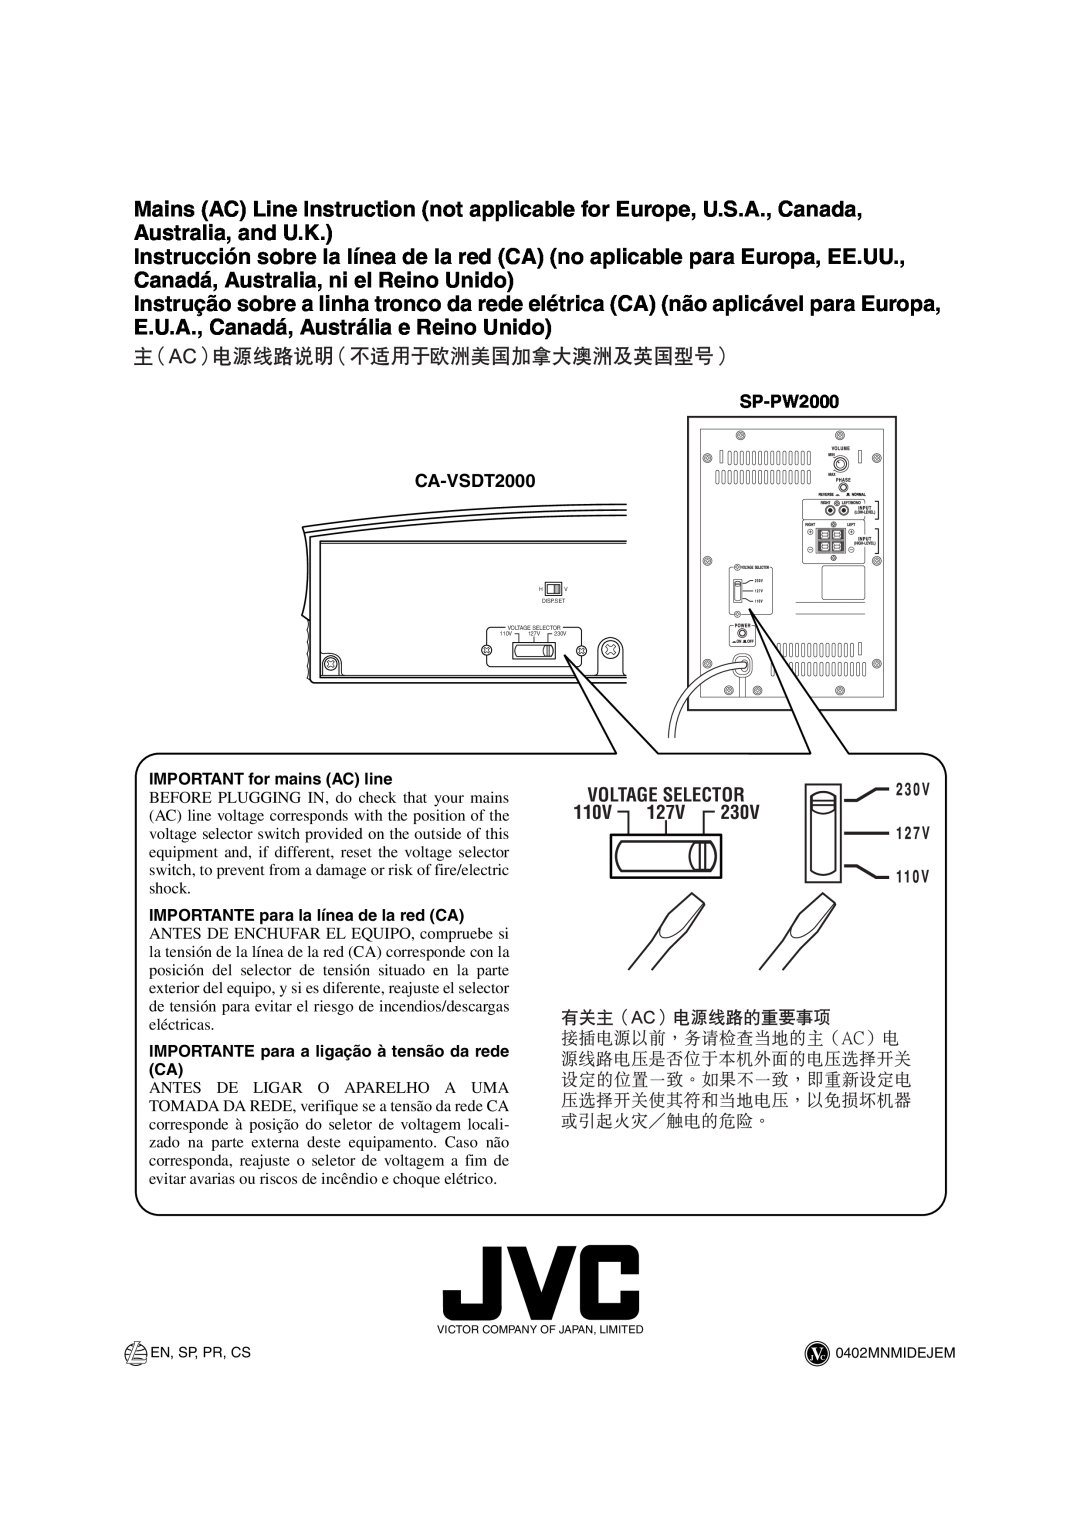 JVC VS-DT2000 manual Voltage Selector, IMPORTANT for mains AC line, IMPORTANTE para a ligação à tensão da rede CA 